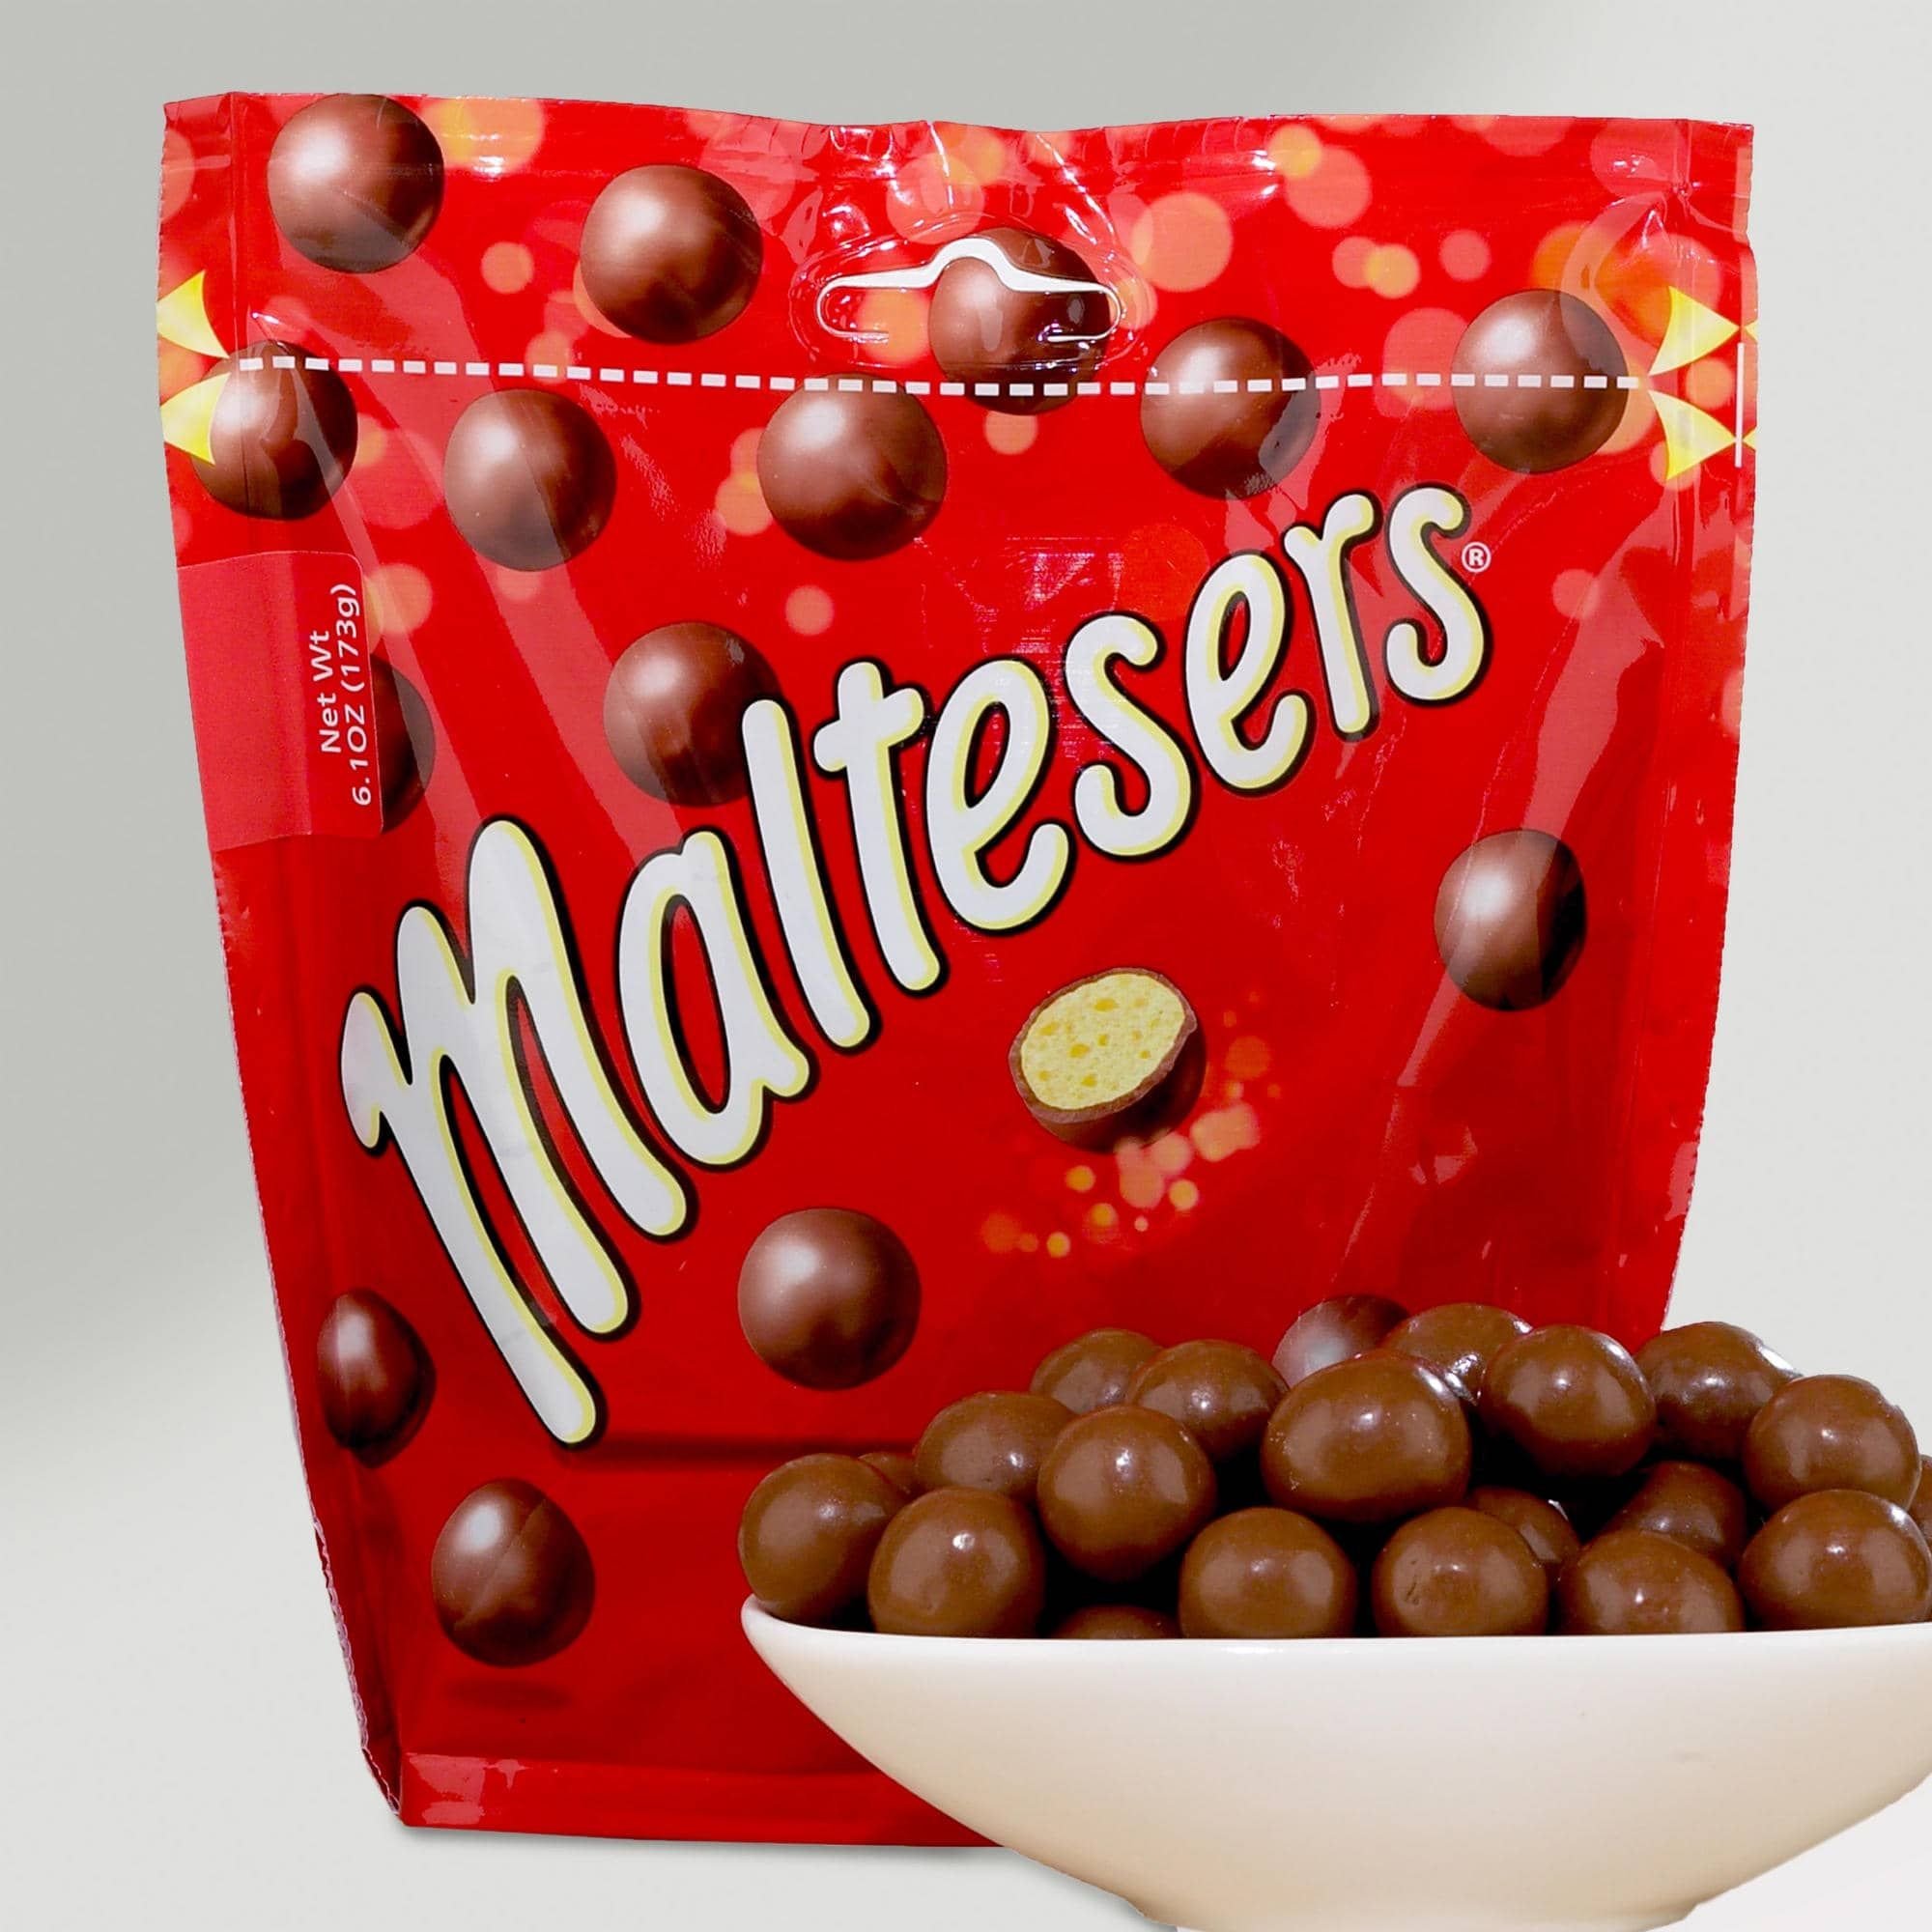 Конфеты шарики в шоколаде. Мальтизерс. Шоколадные шарики Maltesers. Конфеты Maltesers шоколадные шарики. Драже Мальтизерс.